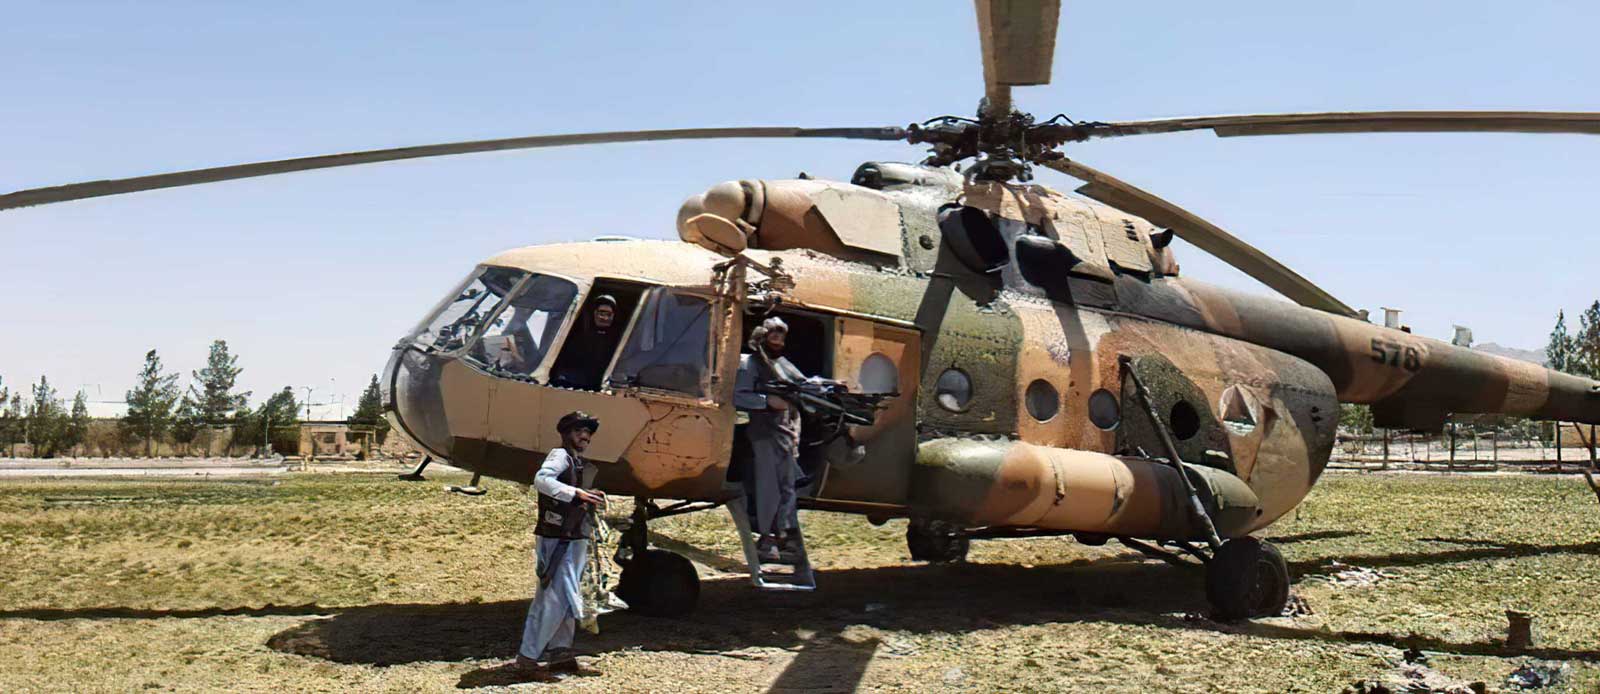 Talibanes se apoderan de helicópteros militares afganos fabricados en EE.UU.